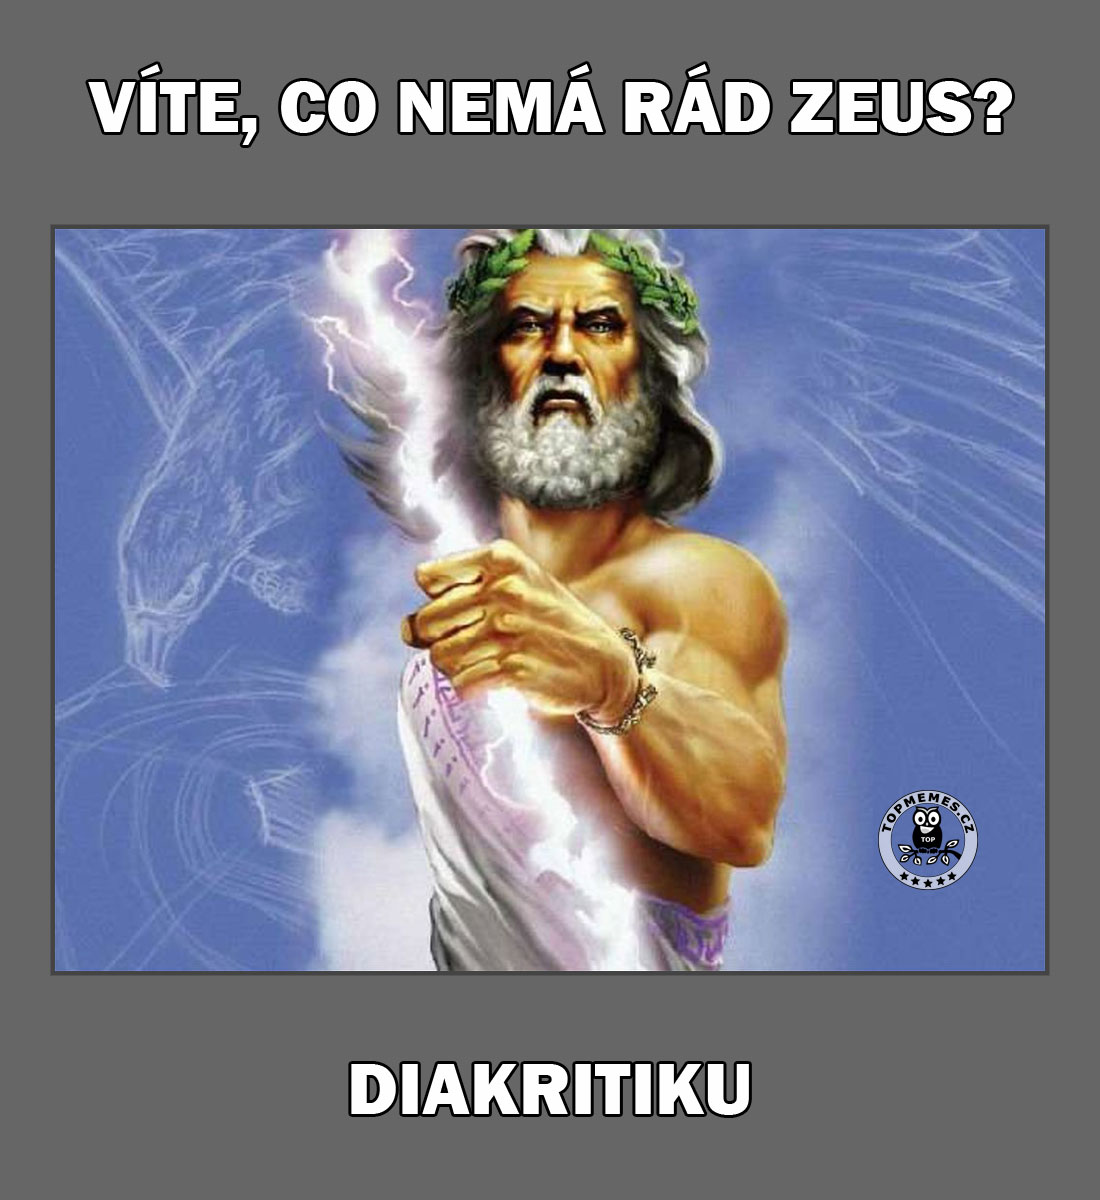 Víte, co nemá rád Zeus?
Diakritiku.